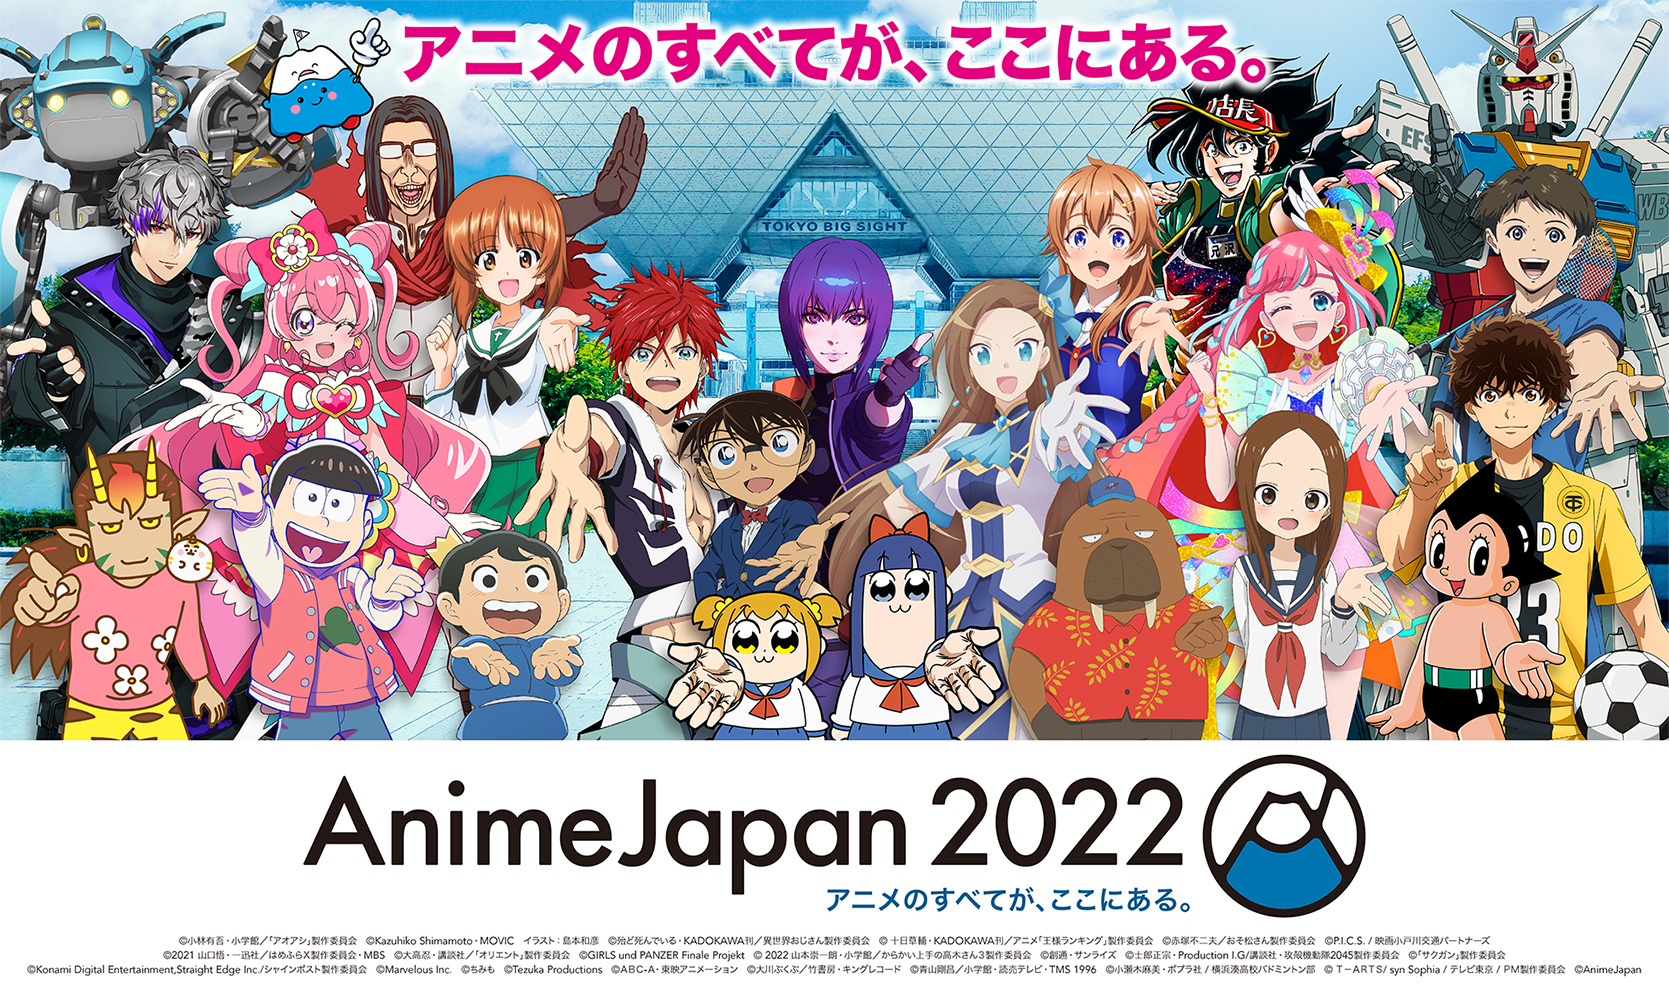 Animejapan アニメジャパン 21 ステージ観覧券 抽選申込ページ Cnプレイガイド